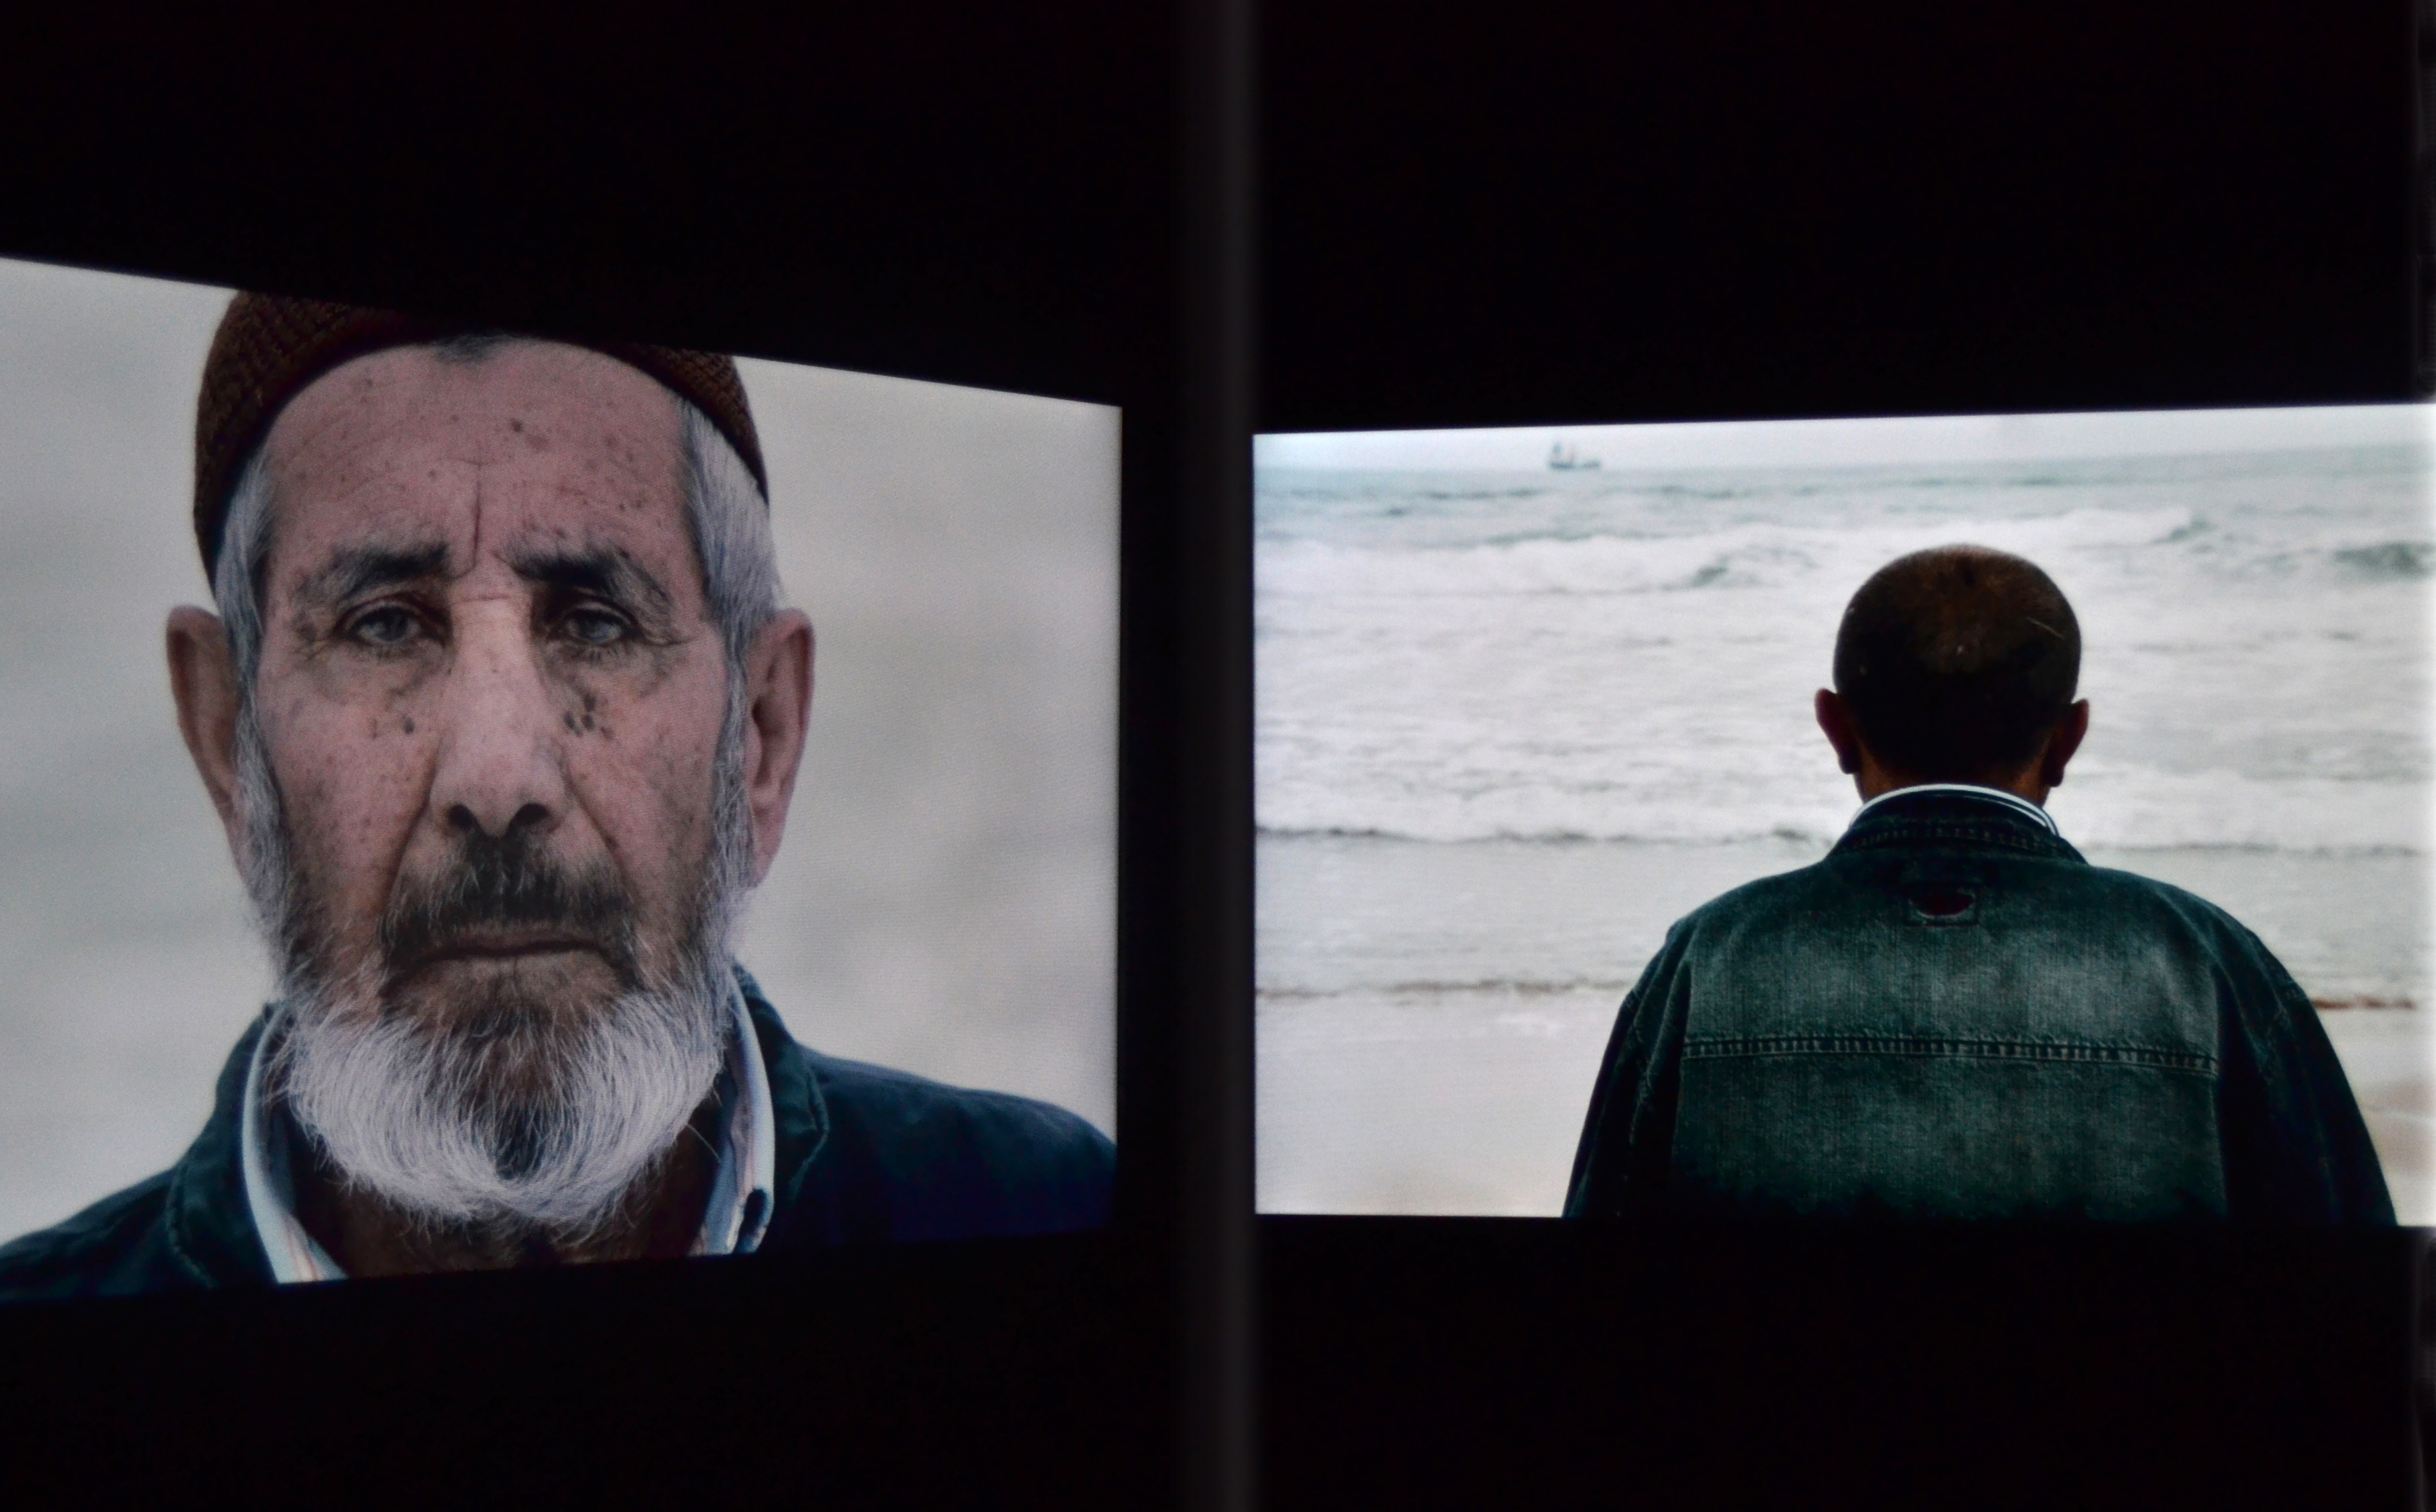 Films de personnes filmées face à la mer par Sophie Calle.